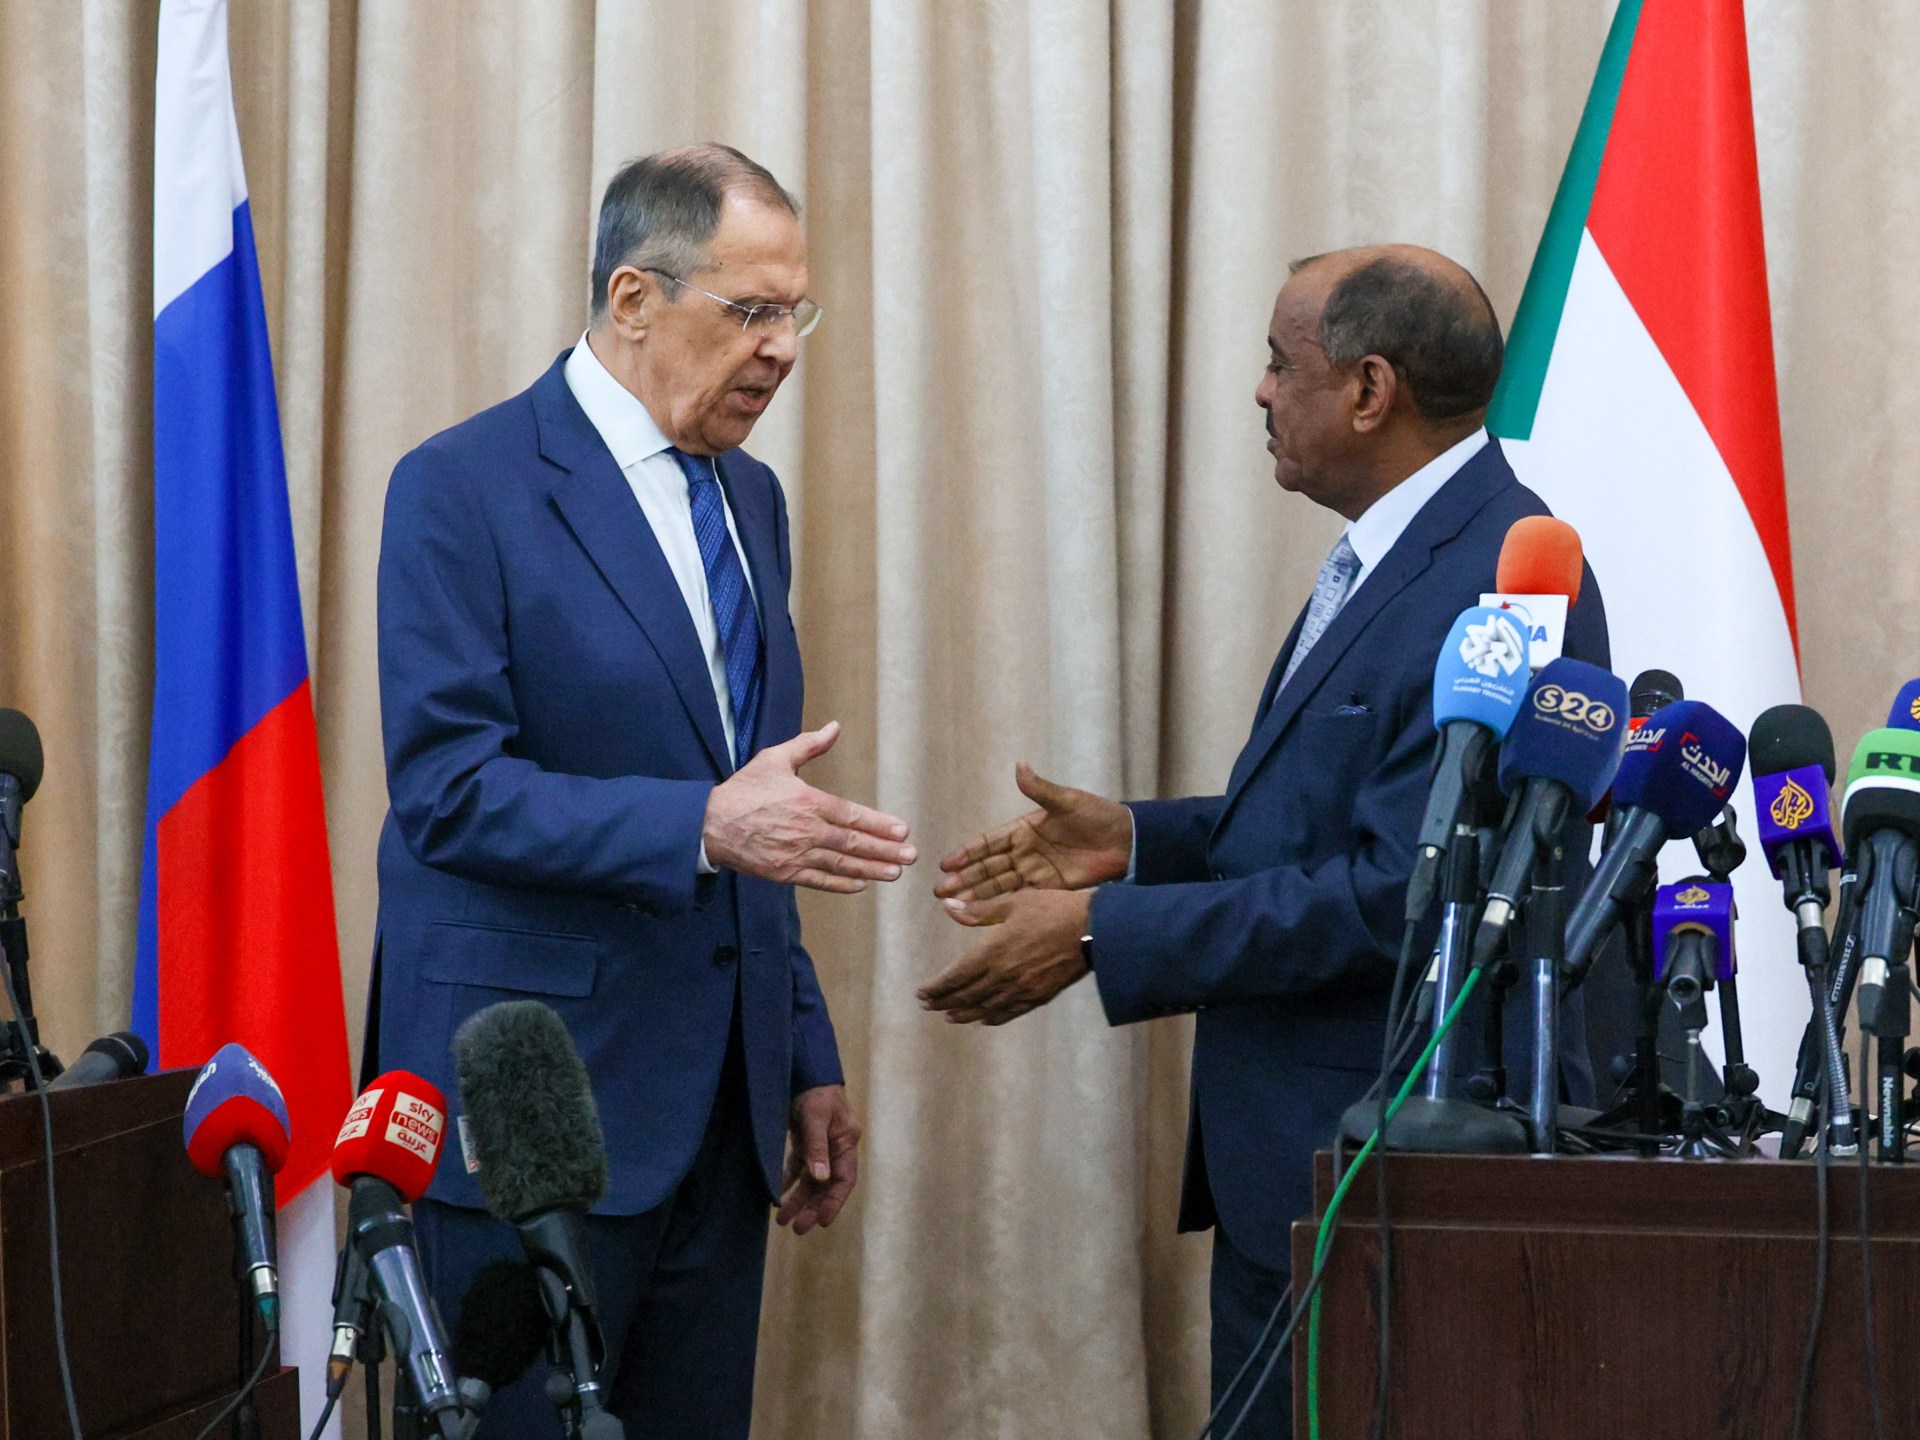 Lavrov de Russie visite le Soudan pour une impulsion diplomatique dans le Sahel africain |  Nouvelles